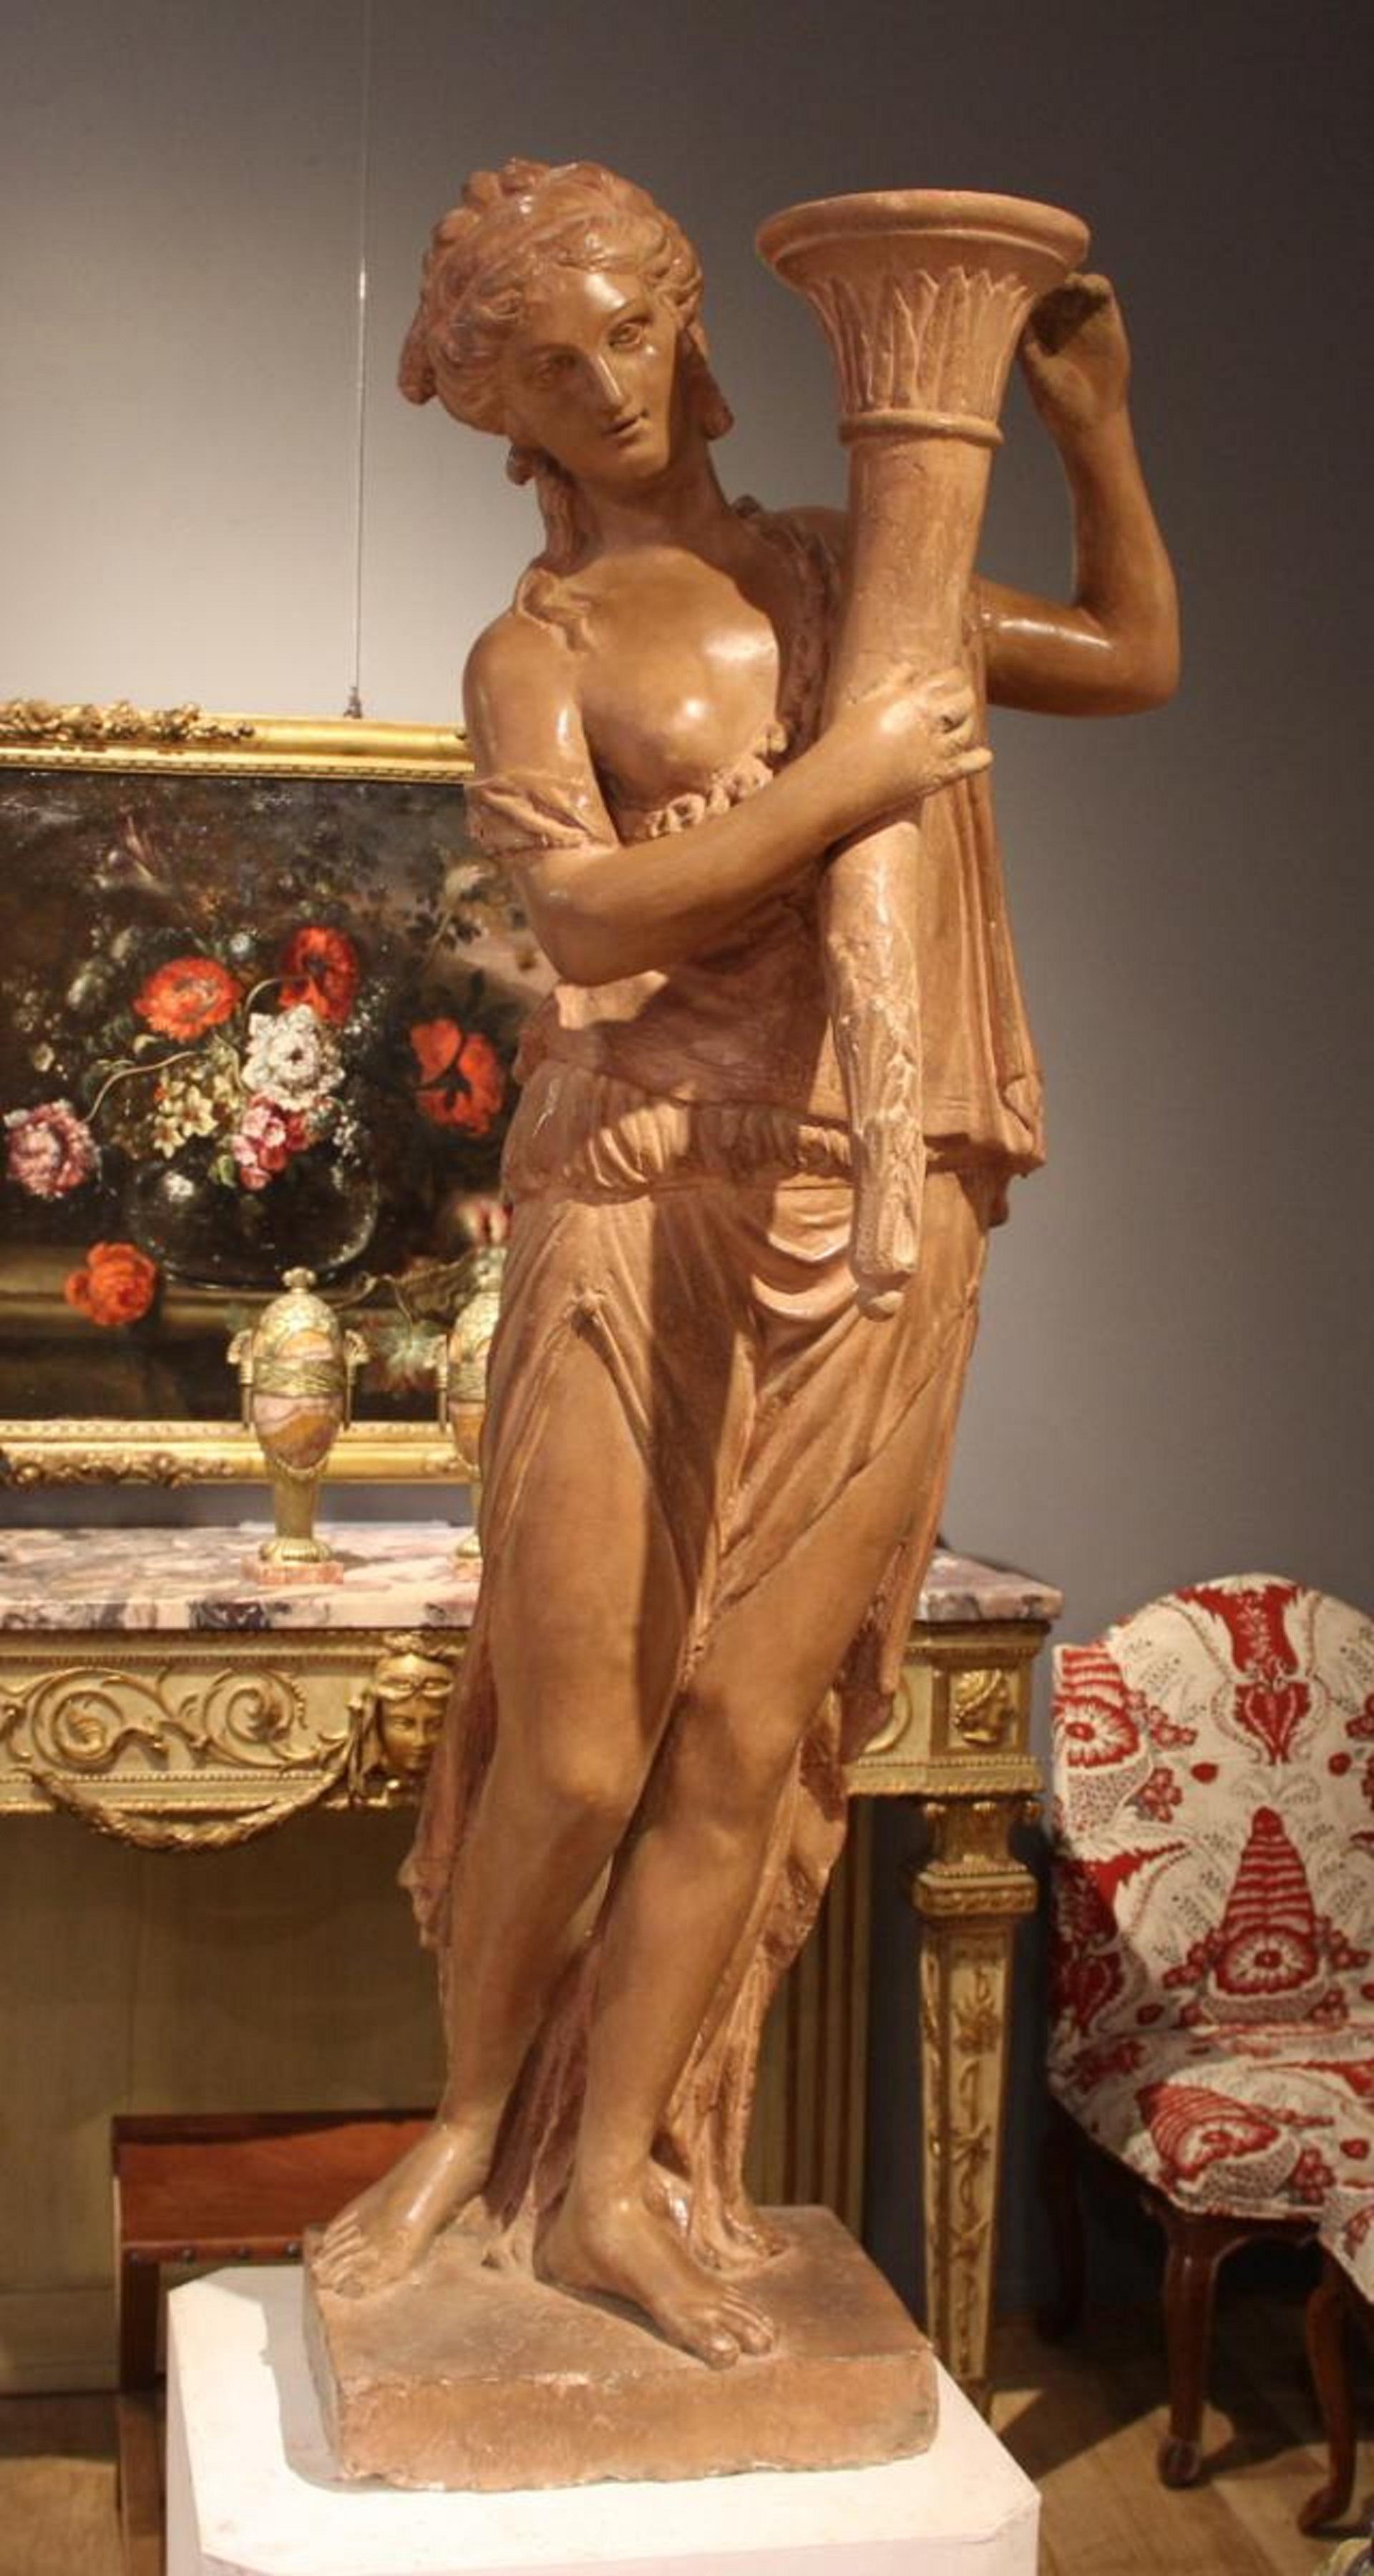 Paire de statues représentant des femmes habillées à l'antique tenant des torches.
Stuc de terre cuite patiné.
Période Louis XVI
XVIIIe siècle.